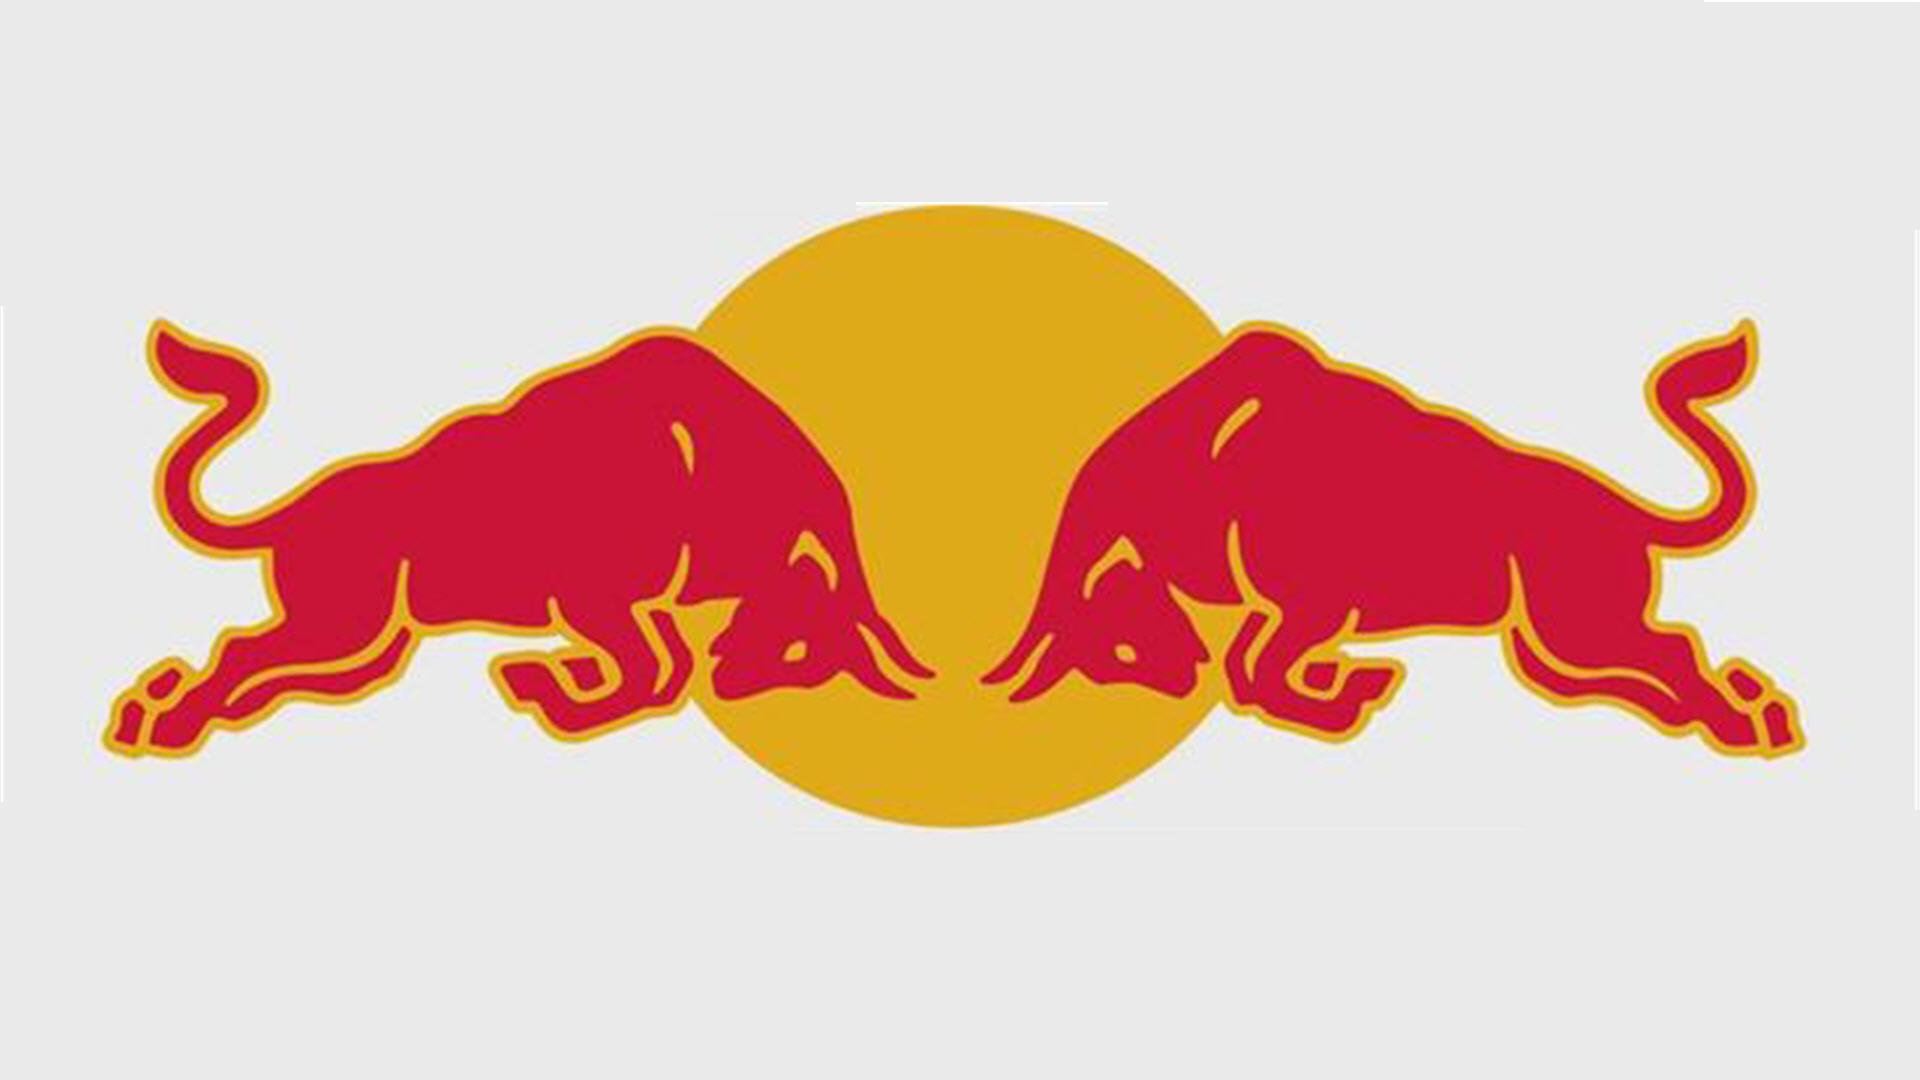 Red Bull Logo Vector Image